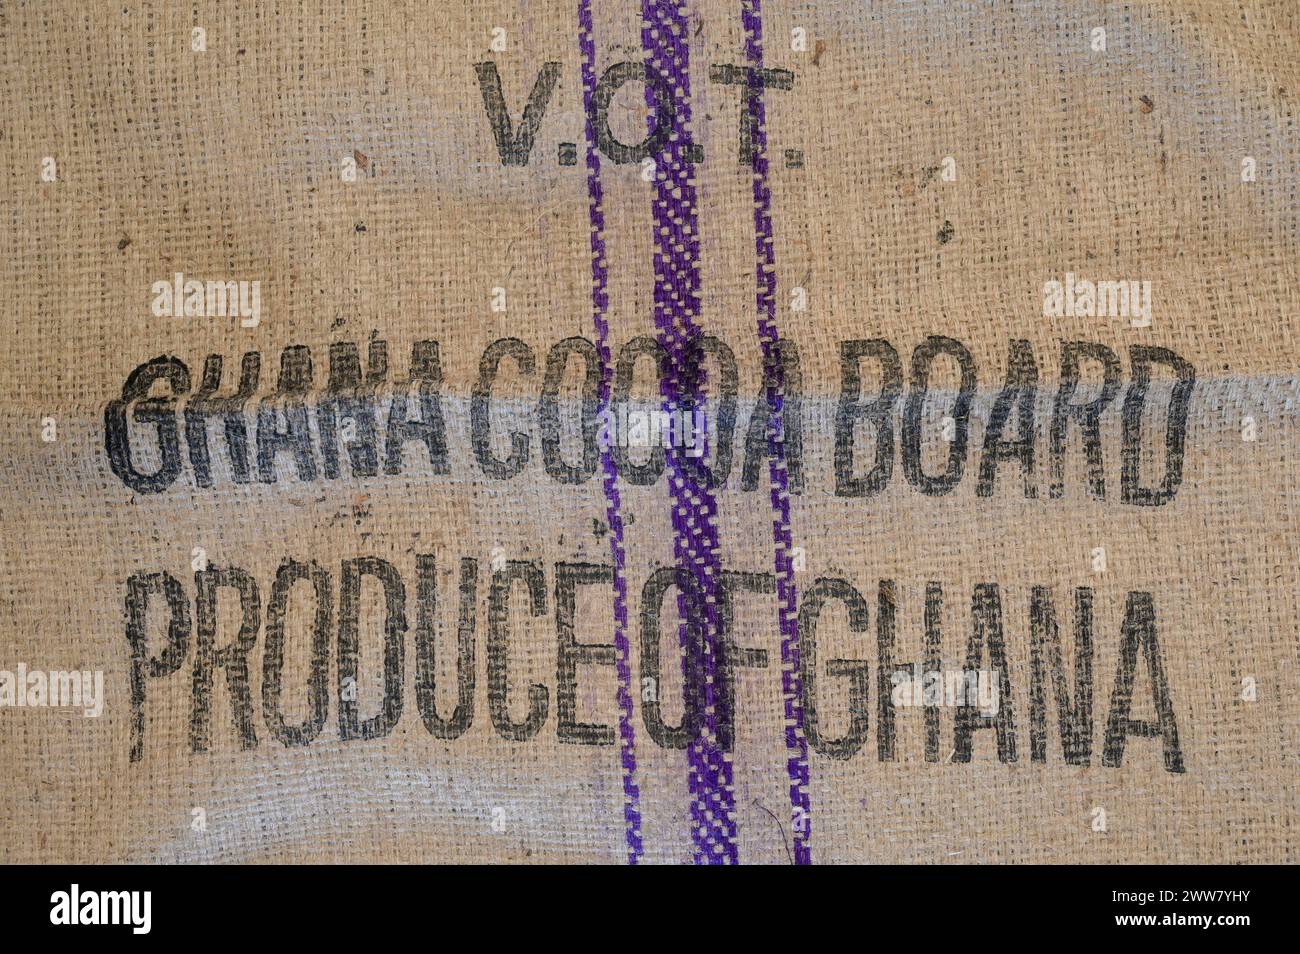 GHANA, Suhum, Jute Säcke für Kakao Board für Kakaobohnen, die staatliche Behörde Cocoa Board of Ghana regelt das Kakaogeschäft / GHANA, Suhum, Jute Säcke für Kakao mit Aufschrift Cocoa Board, eine staatliche Behörde zur Regulierung des Kakao Geschäfts Stockfoto